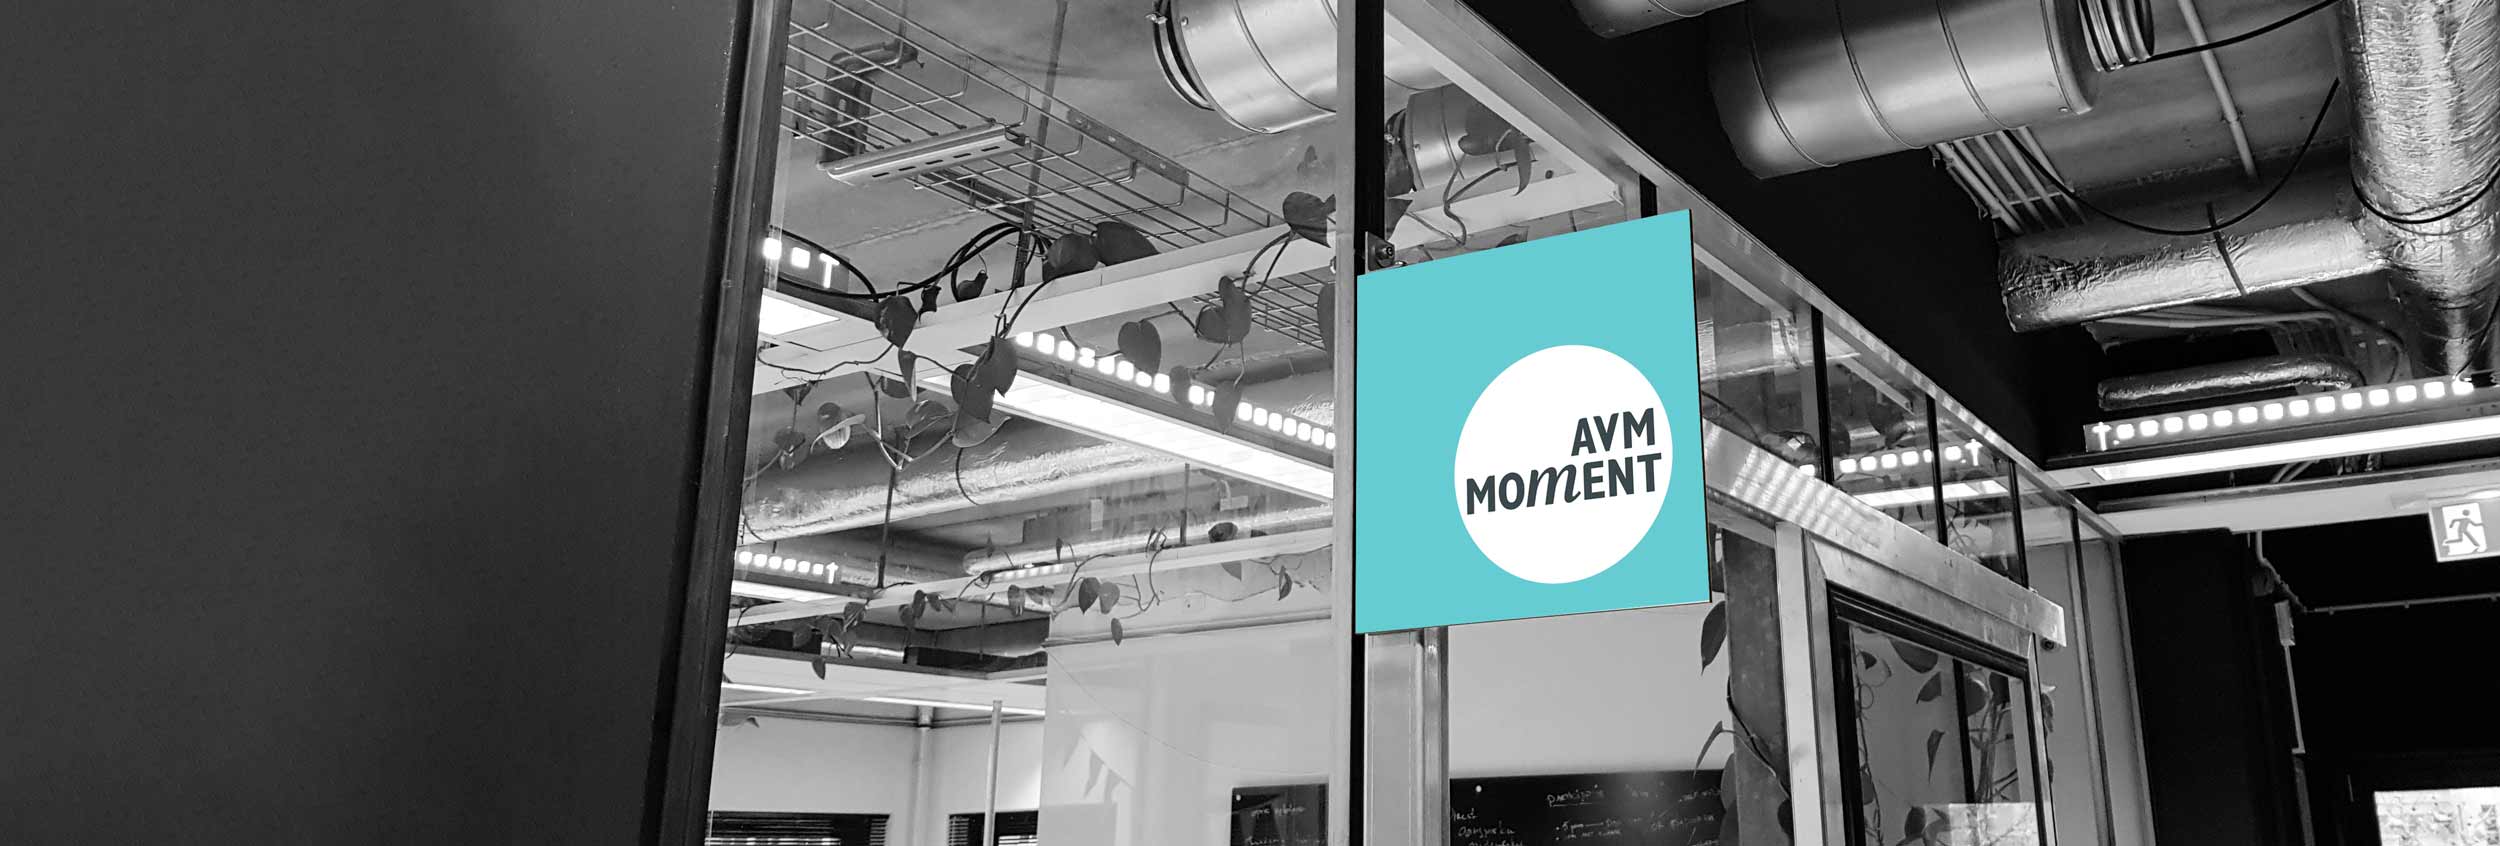 AVM Moment Design - Ontwerp Bureau Amsterdam